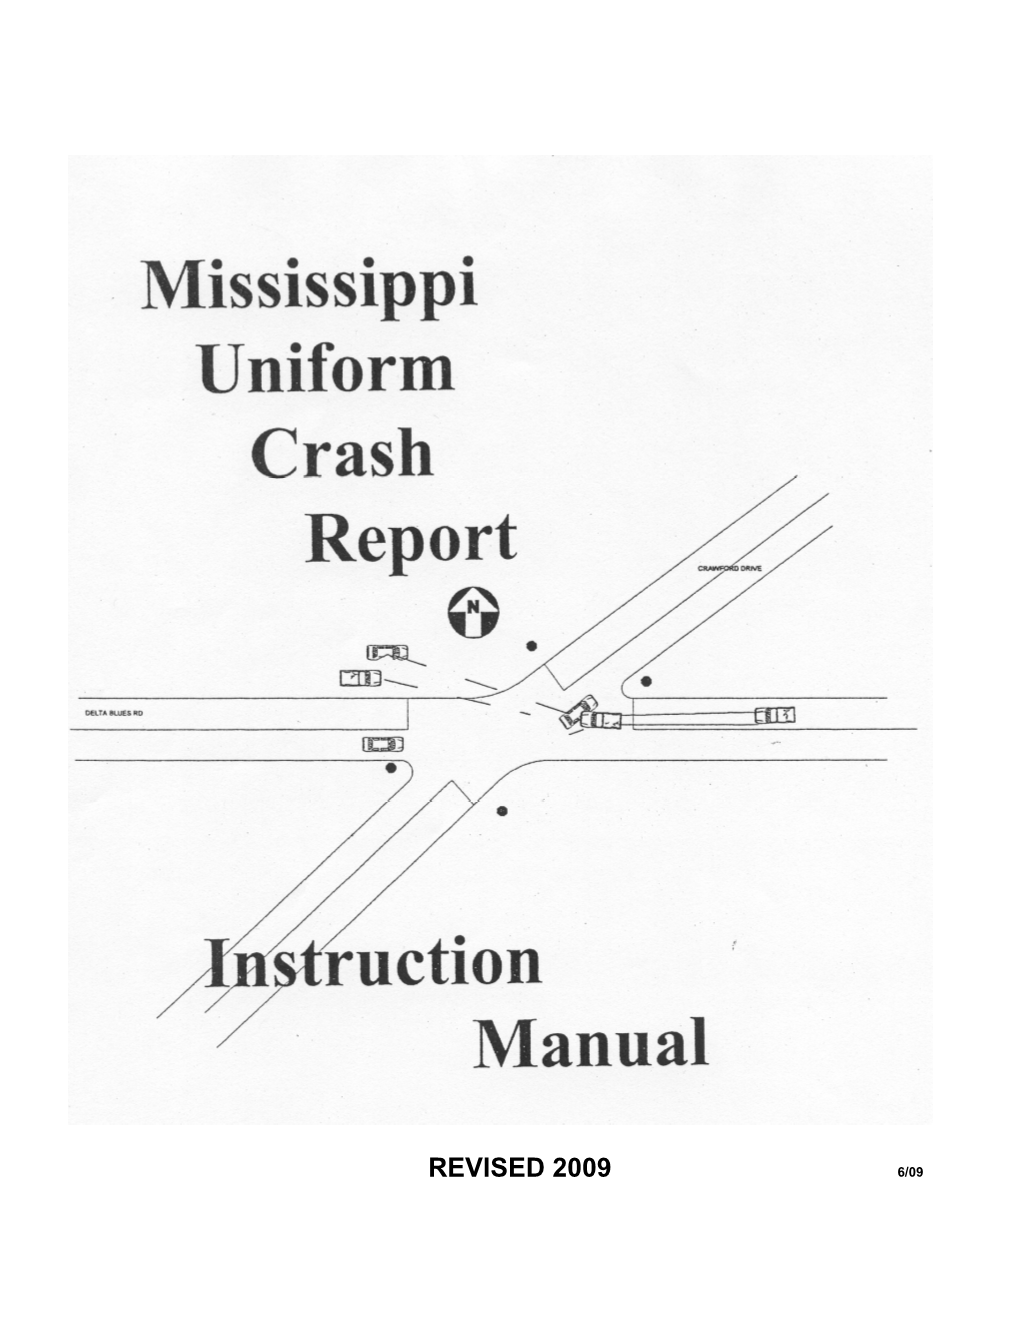 Mississippi Crash Report Instruction Manual, Revised 6/2009